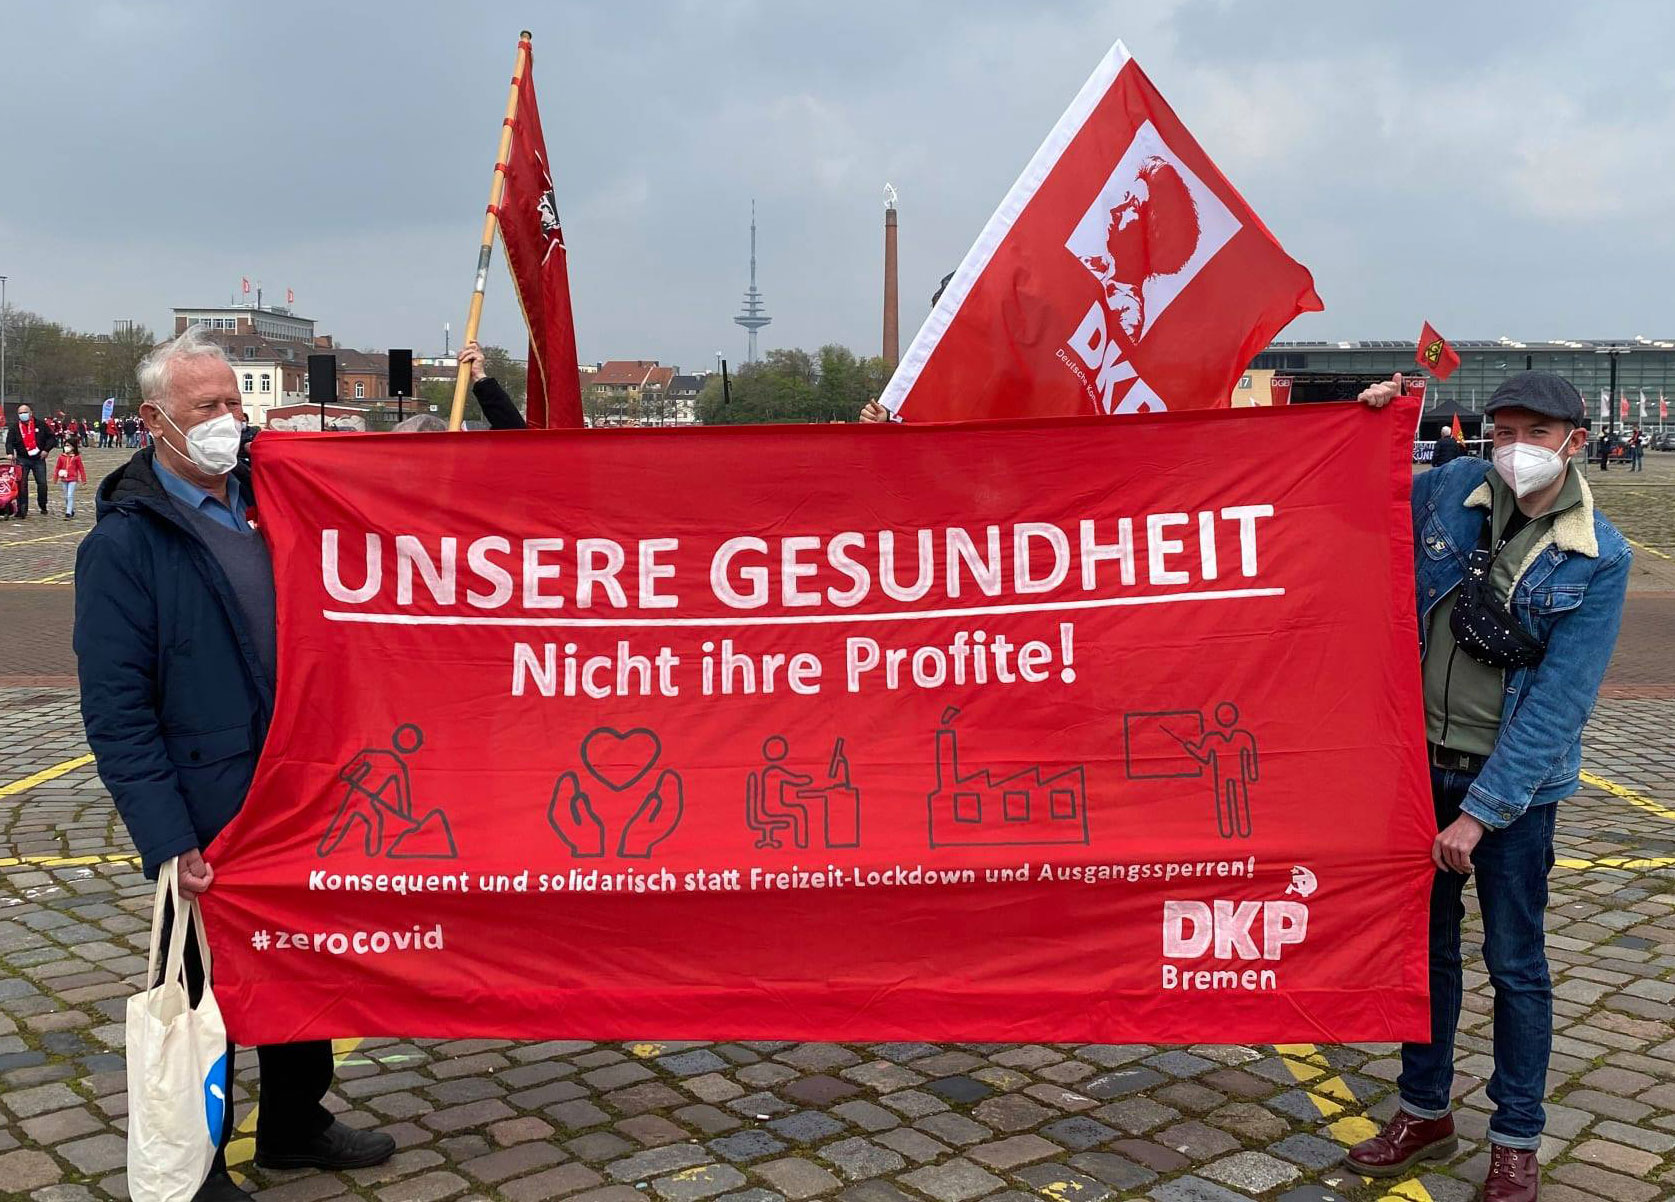 bremen - Der 1. Mai auf der Straße - - Blog, DKP in Aktion